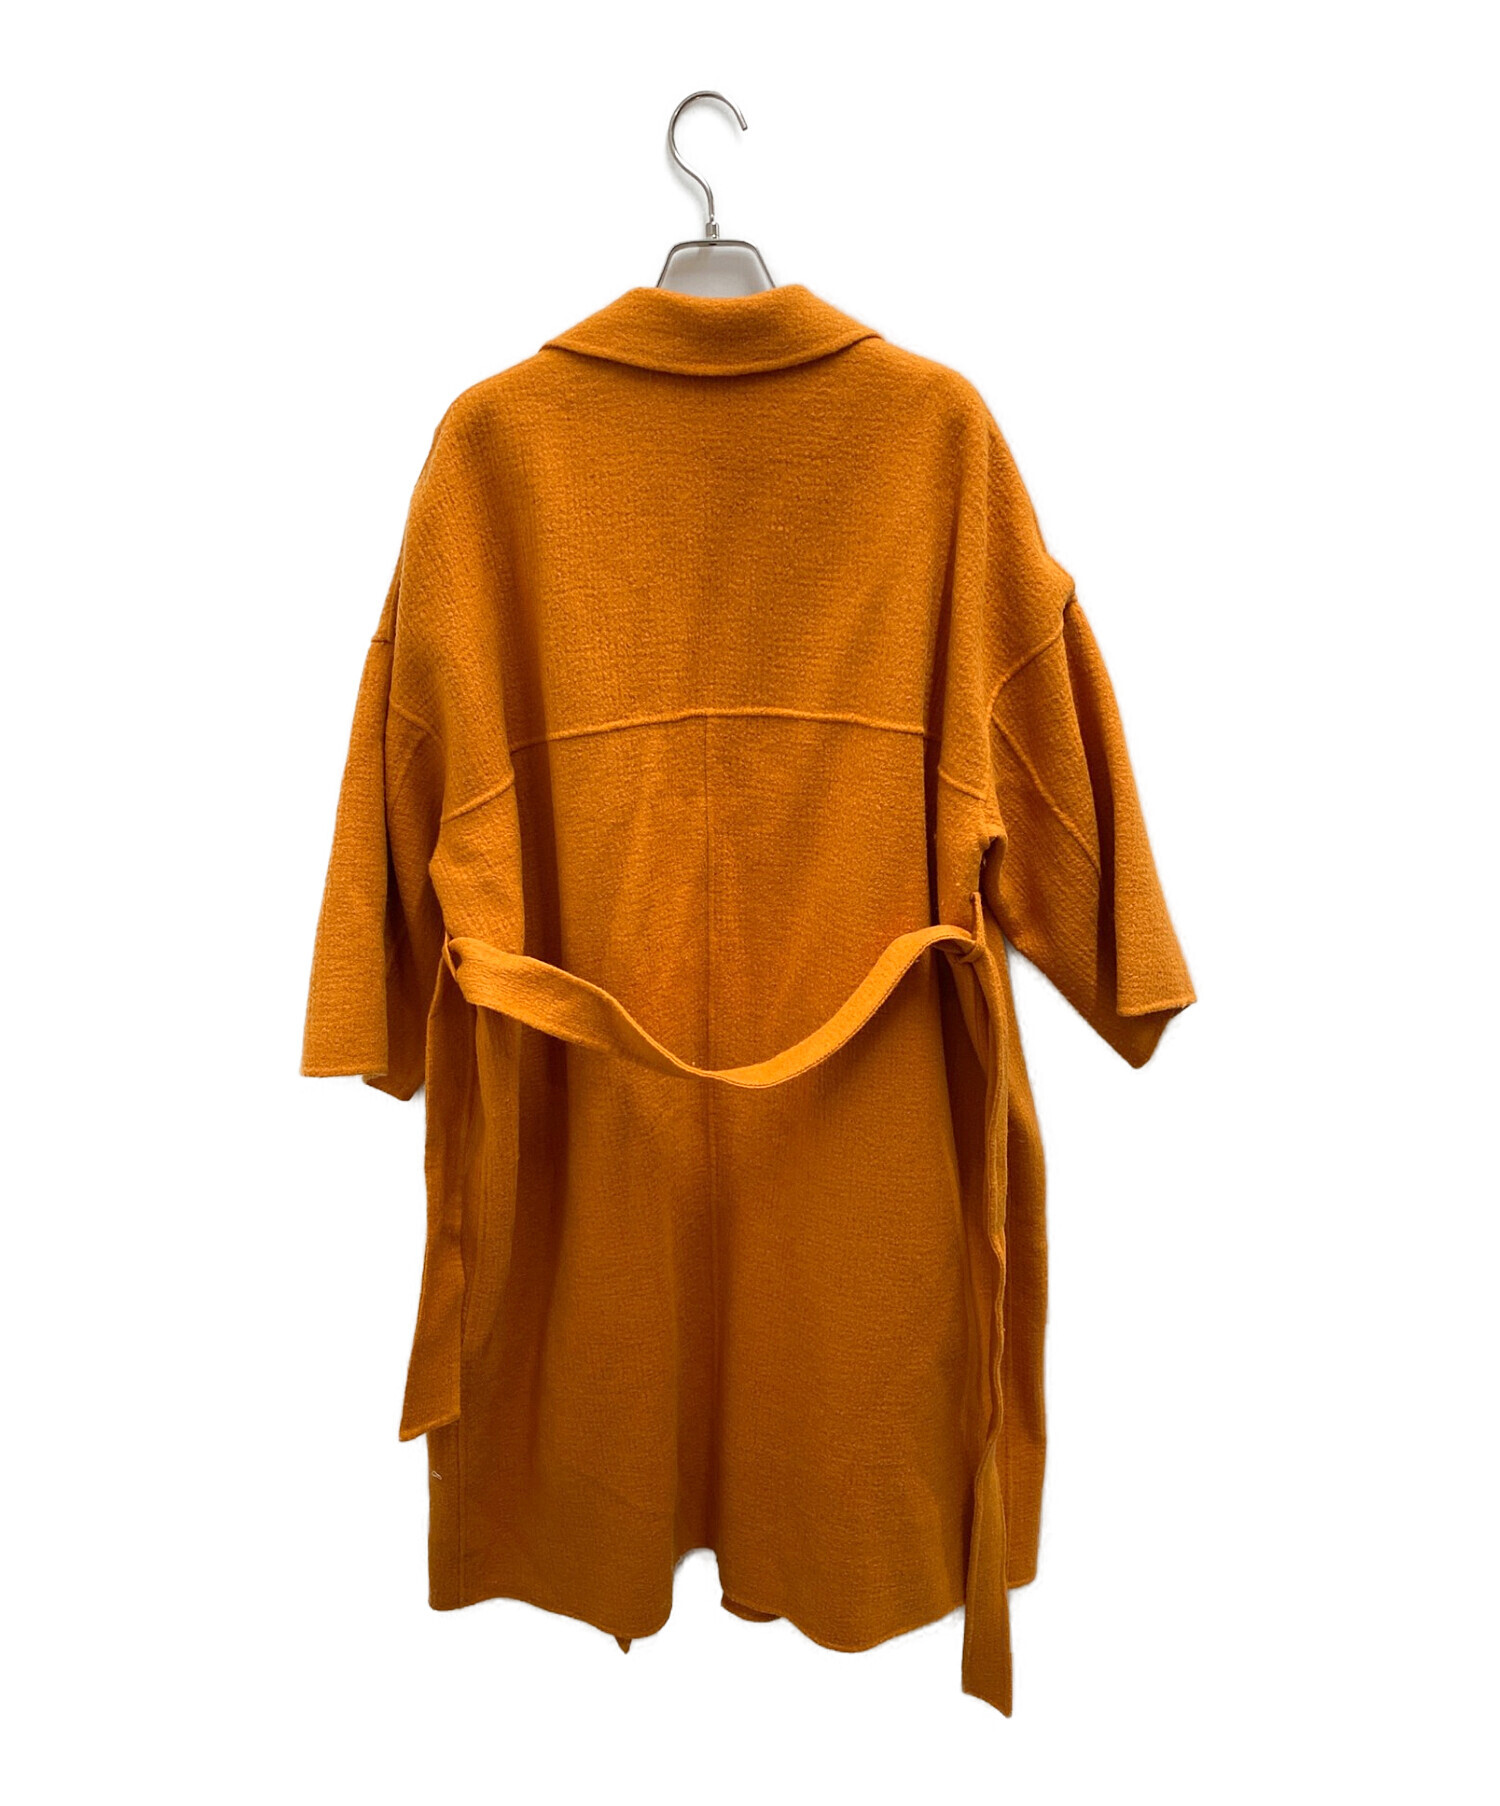 状態1度短時間の着用のみの美品STUNNING LURE ステンカラーオーバーコート オレンジ サイズ2